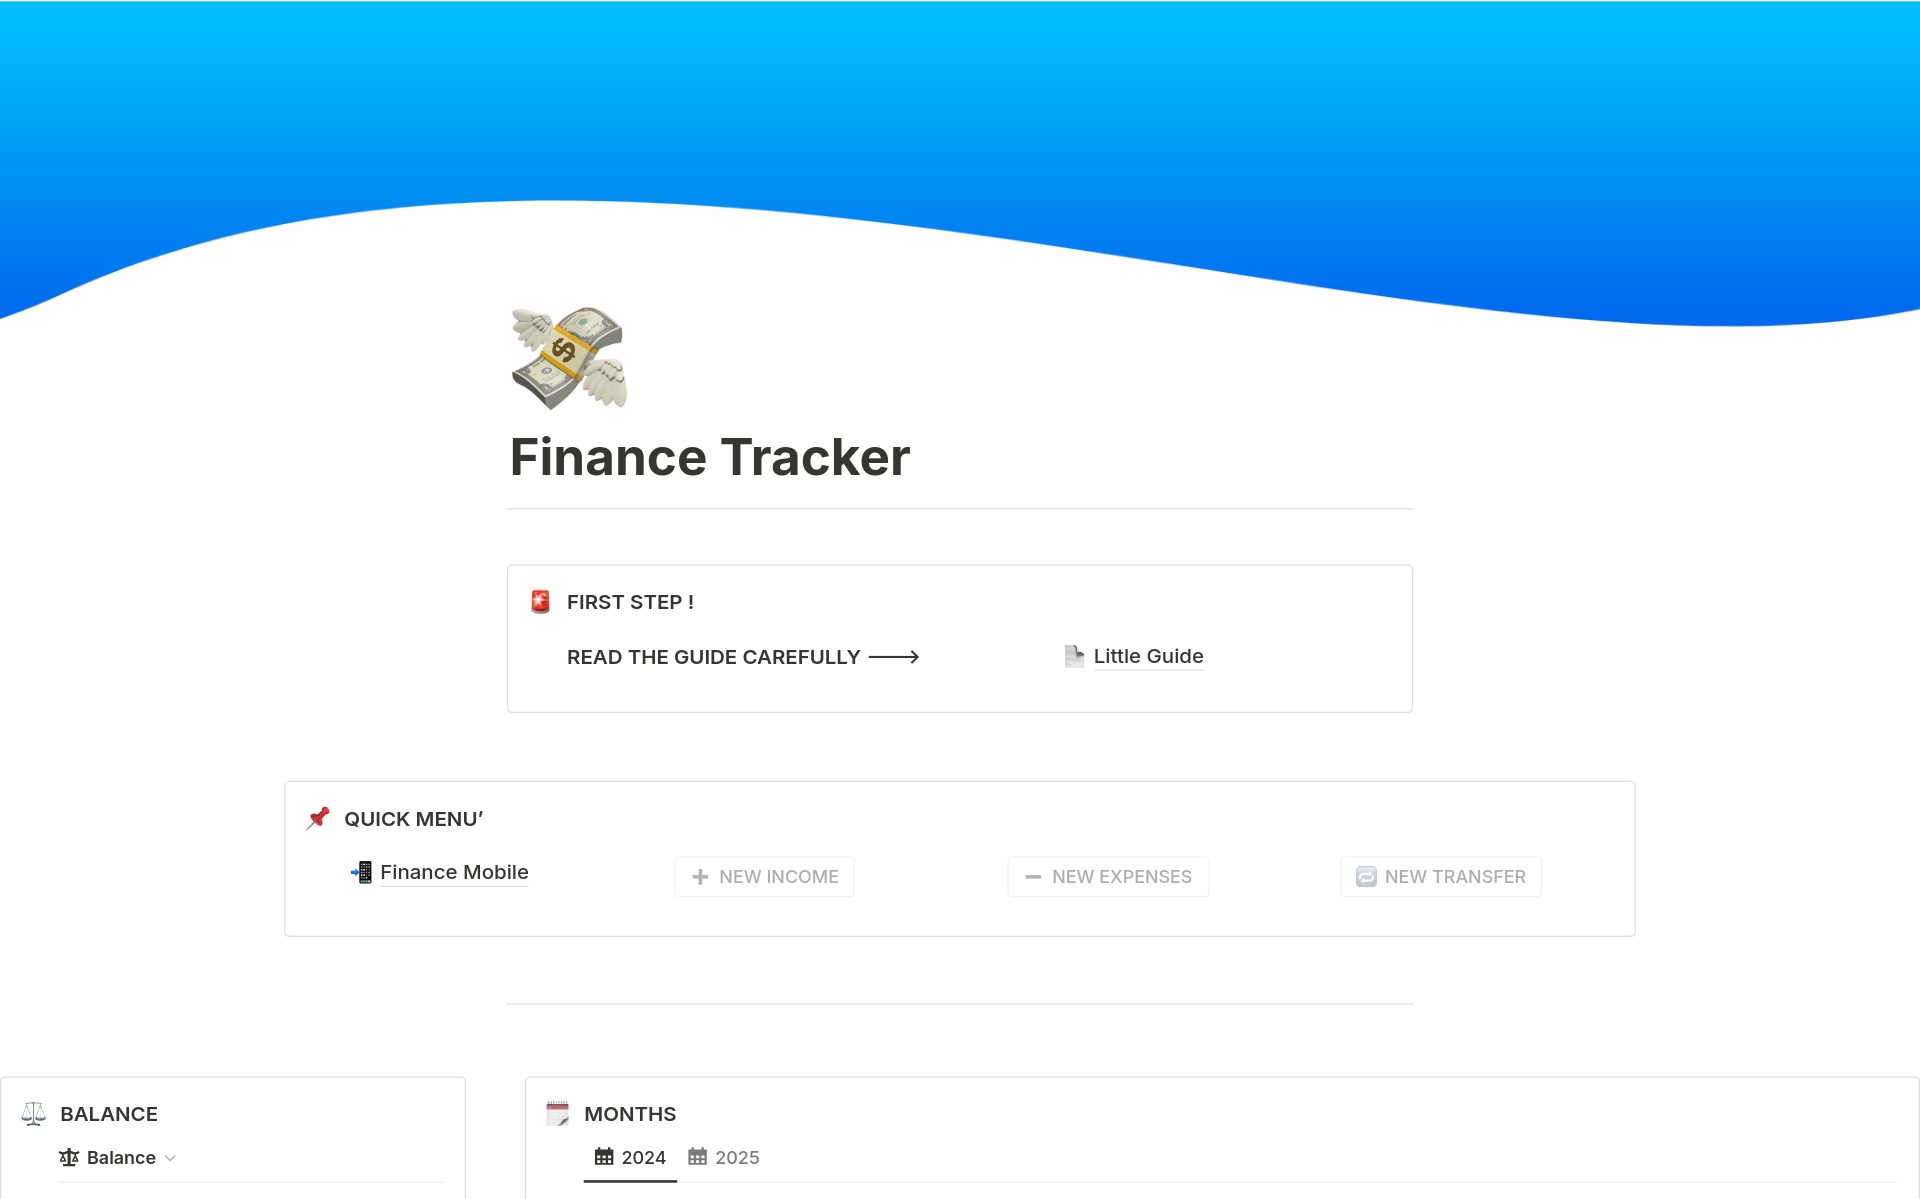 Vista previa de una plantilla para Complete Finance Tracker